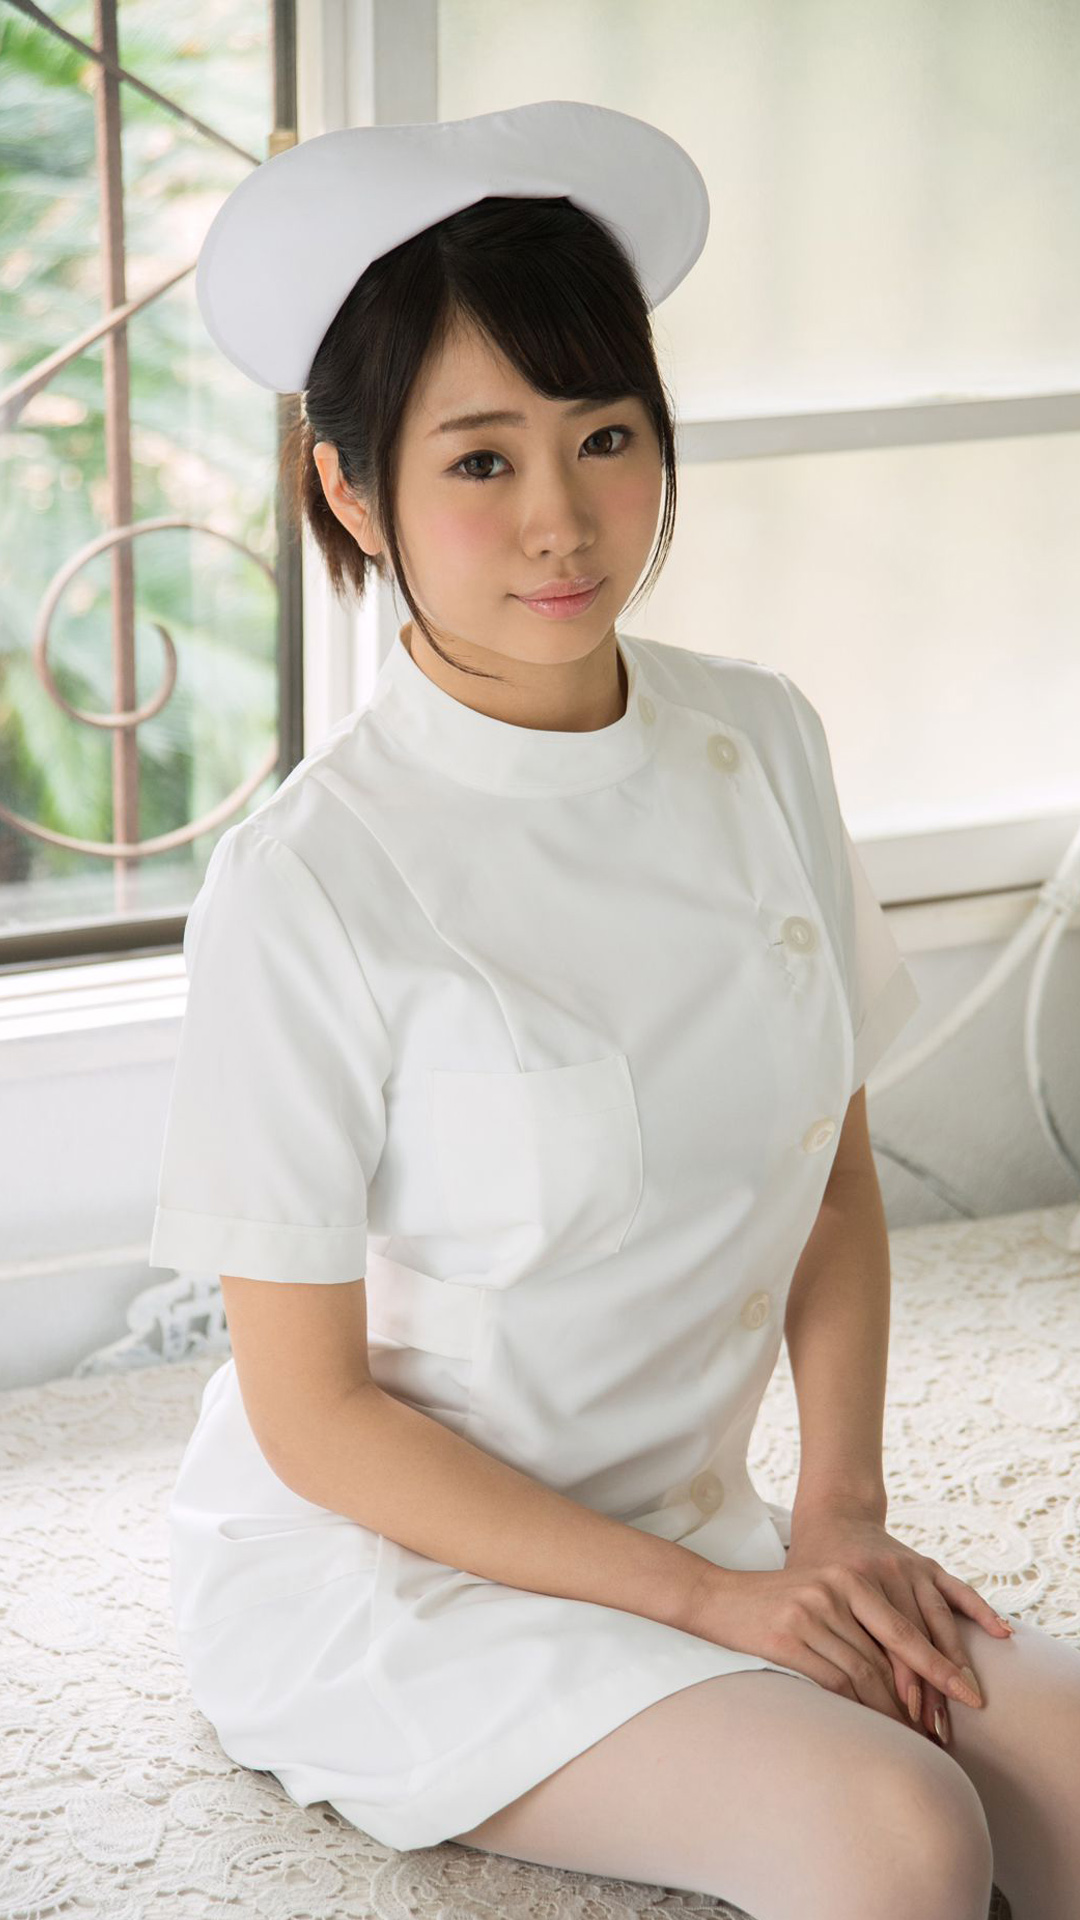 日本白丝护士美女大胸肥臀病床上玩写真高清 第一张